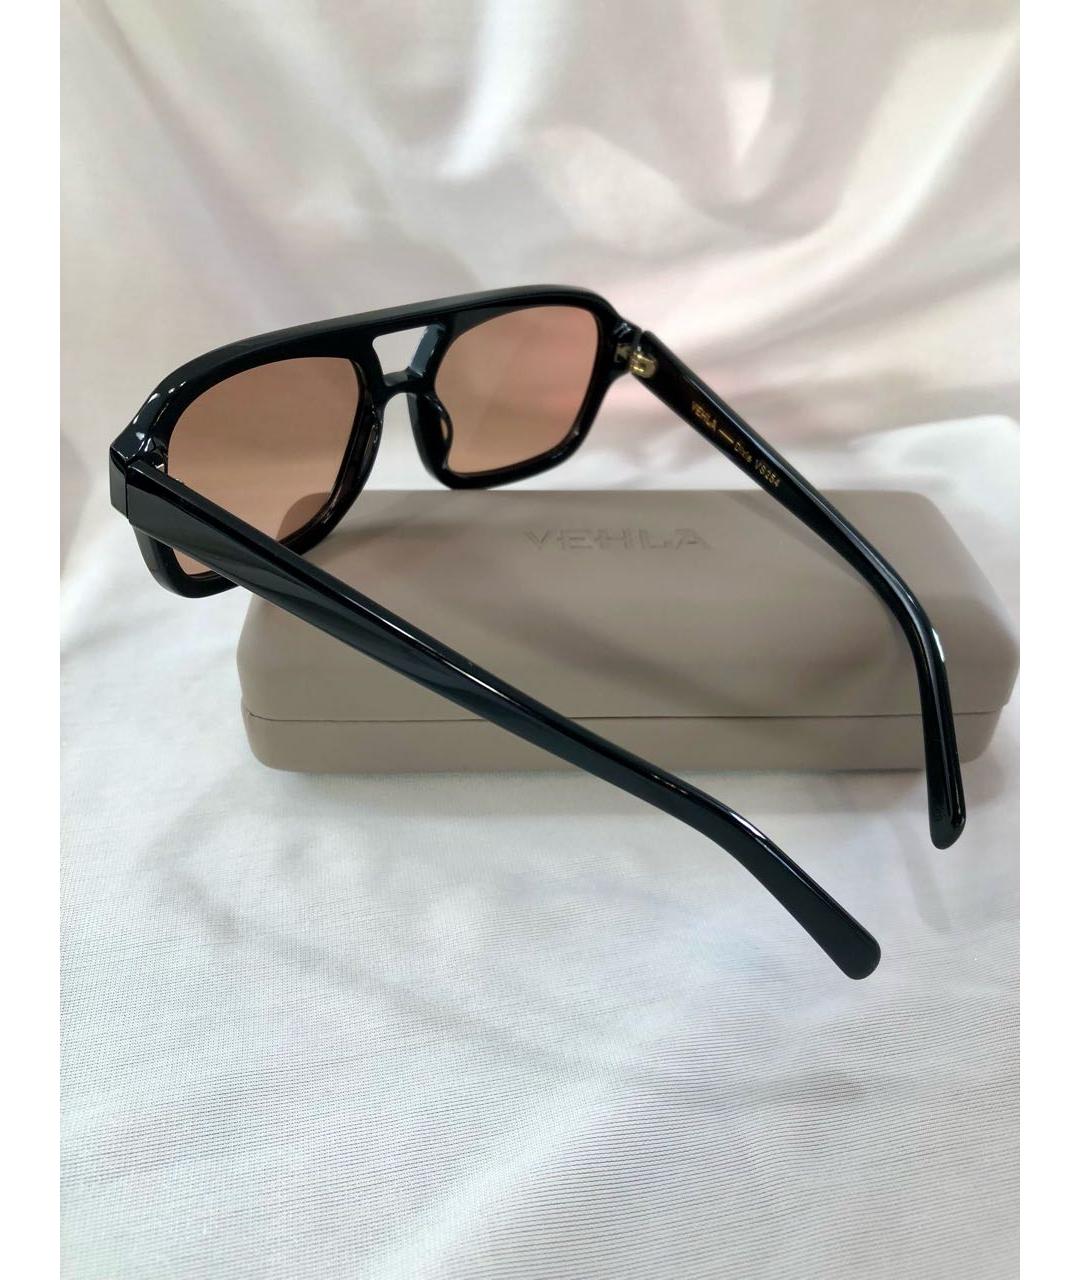 Vehla Черные пластиковые солнцезащитные очки, фото 2